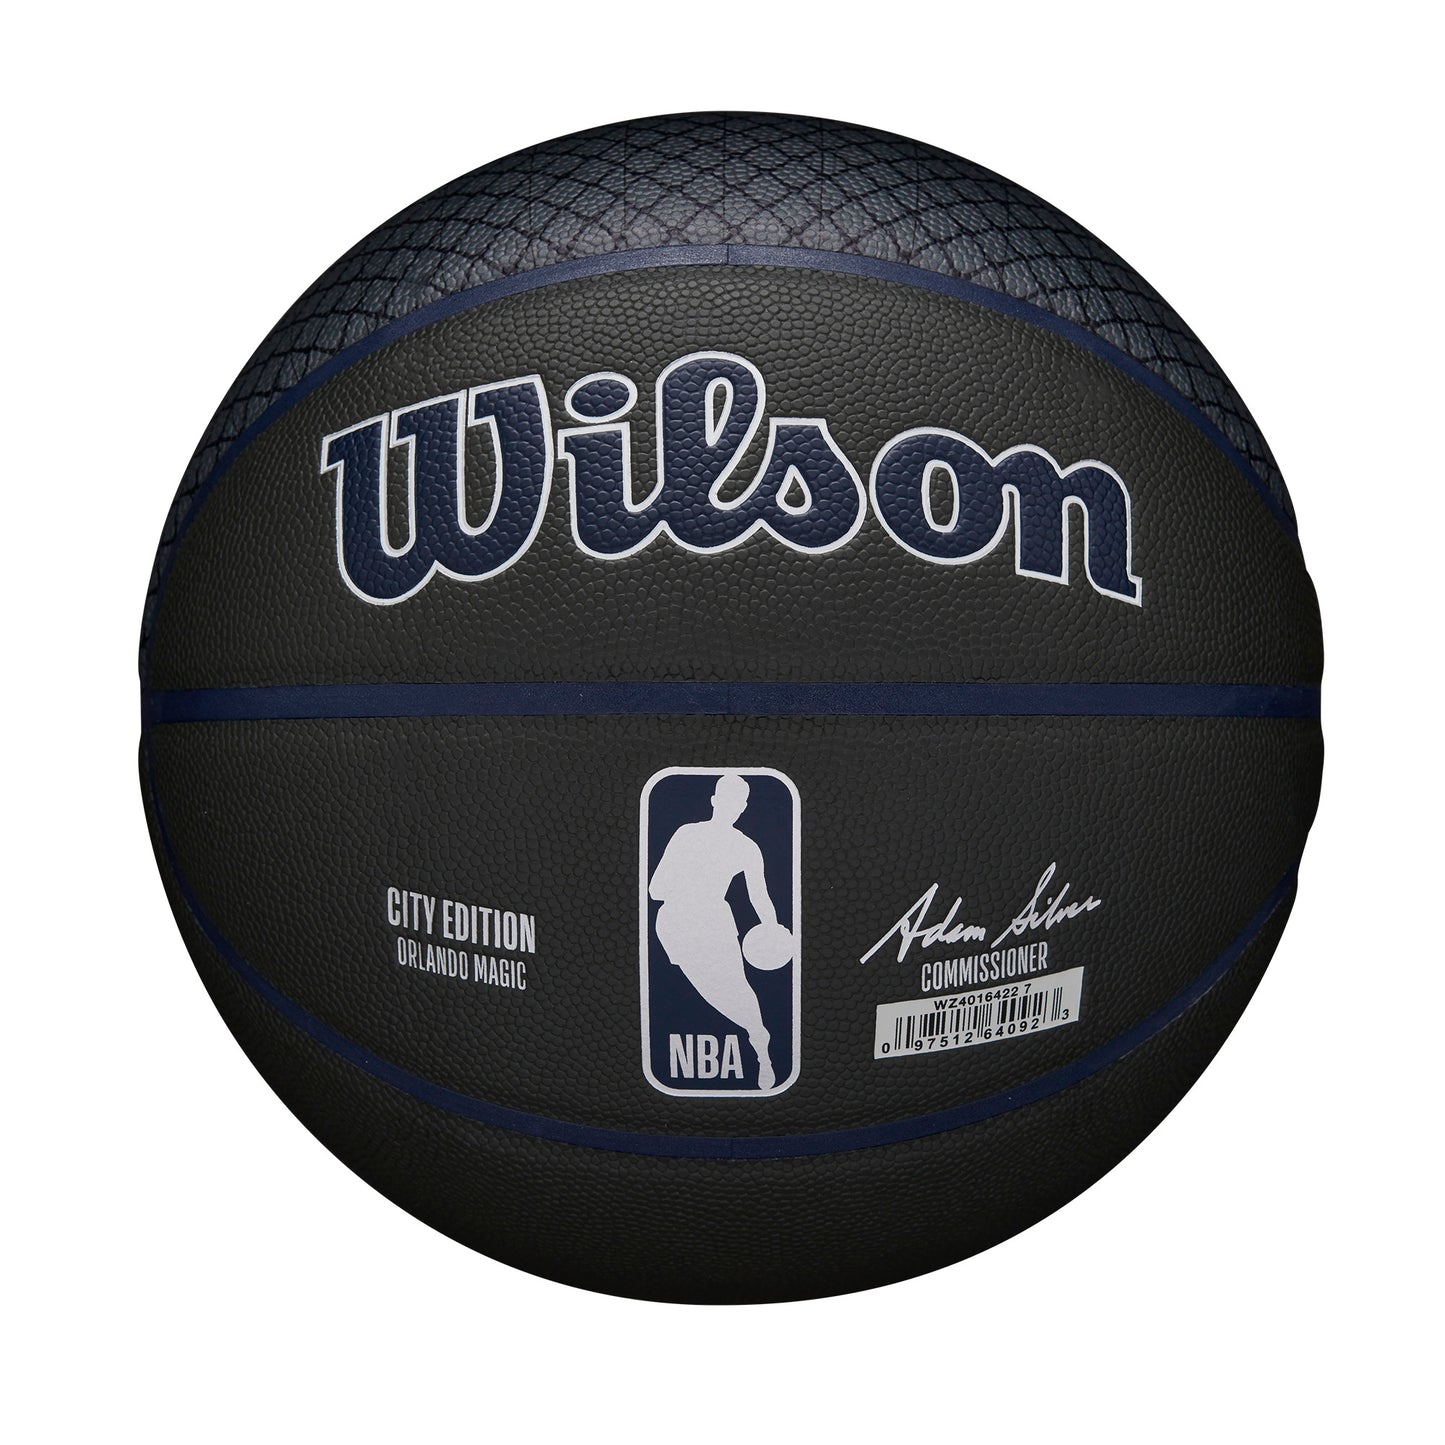 Wilson NBA TEAM CITY COLLECTOR BASKETBALL ORLANDO MAGIC Black WZ4016422XB